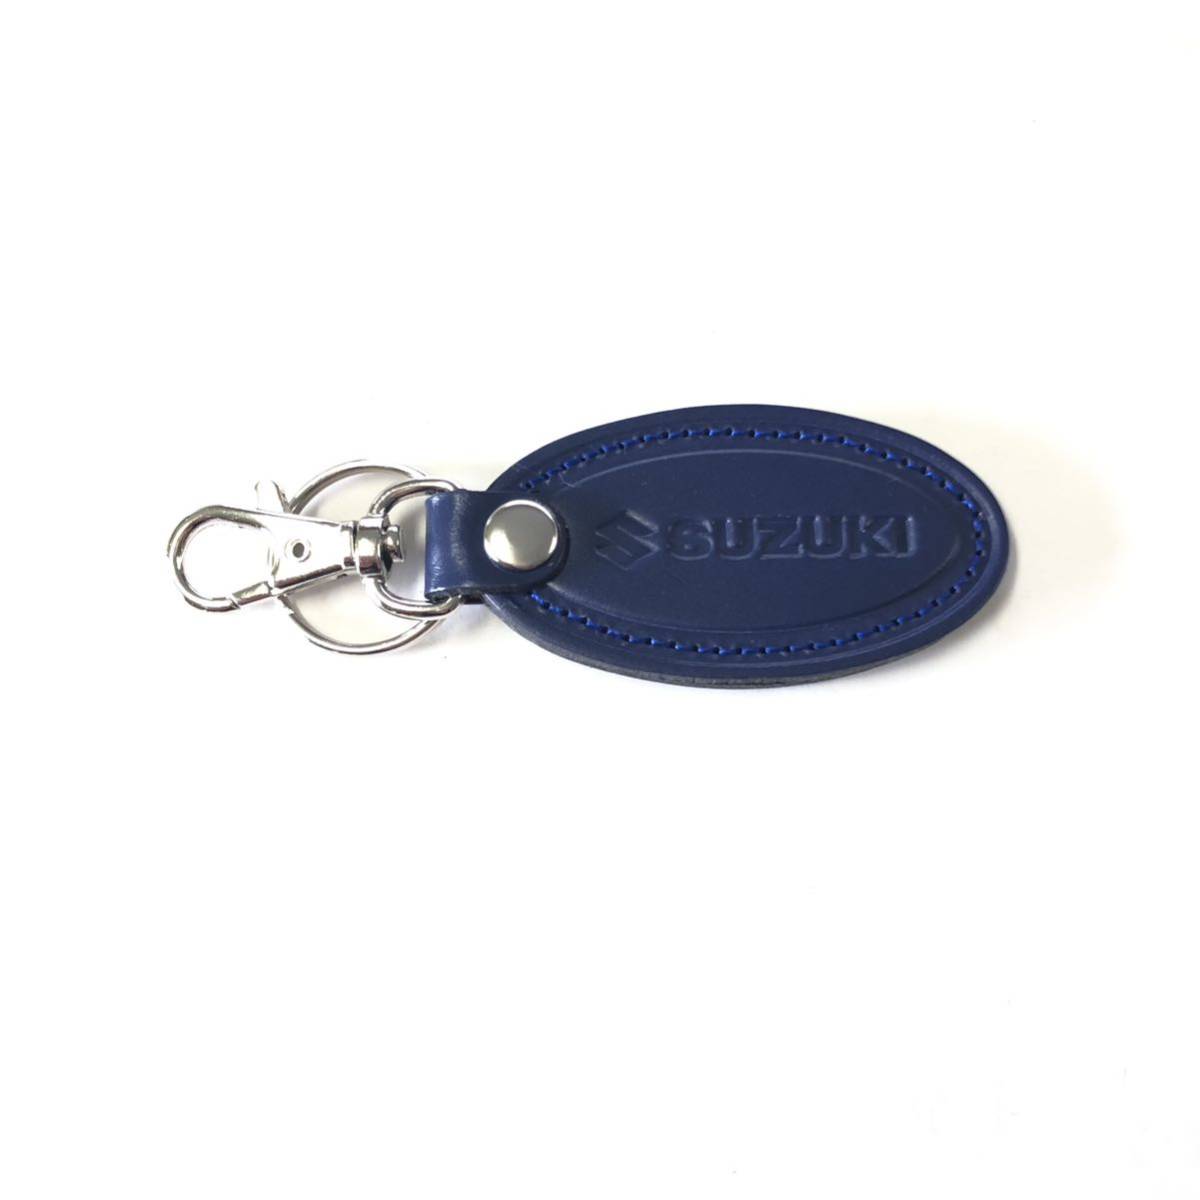  Suzuki key holder type pushed . blue 